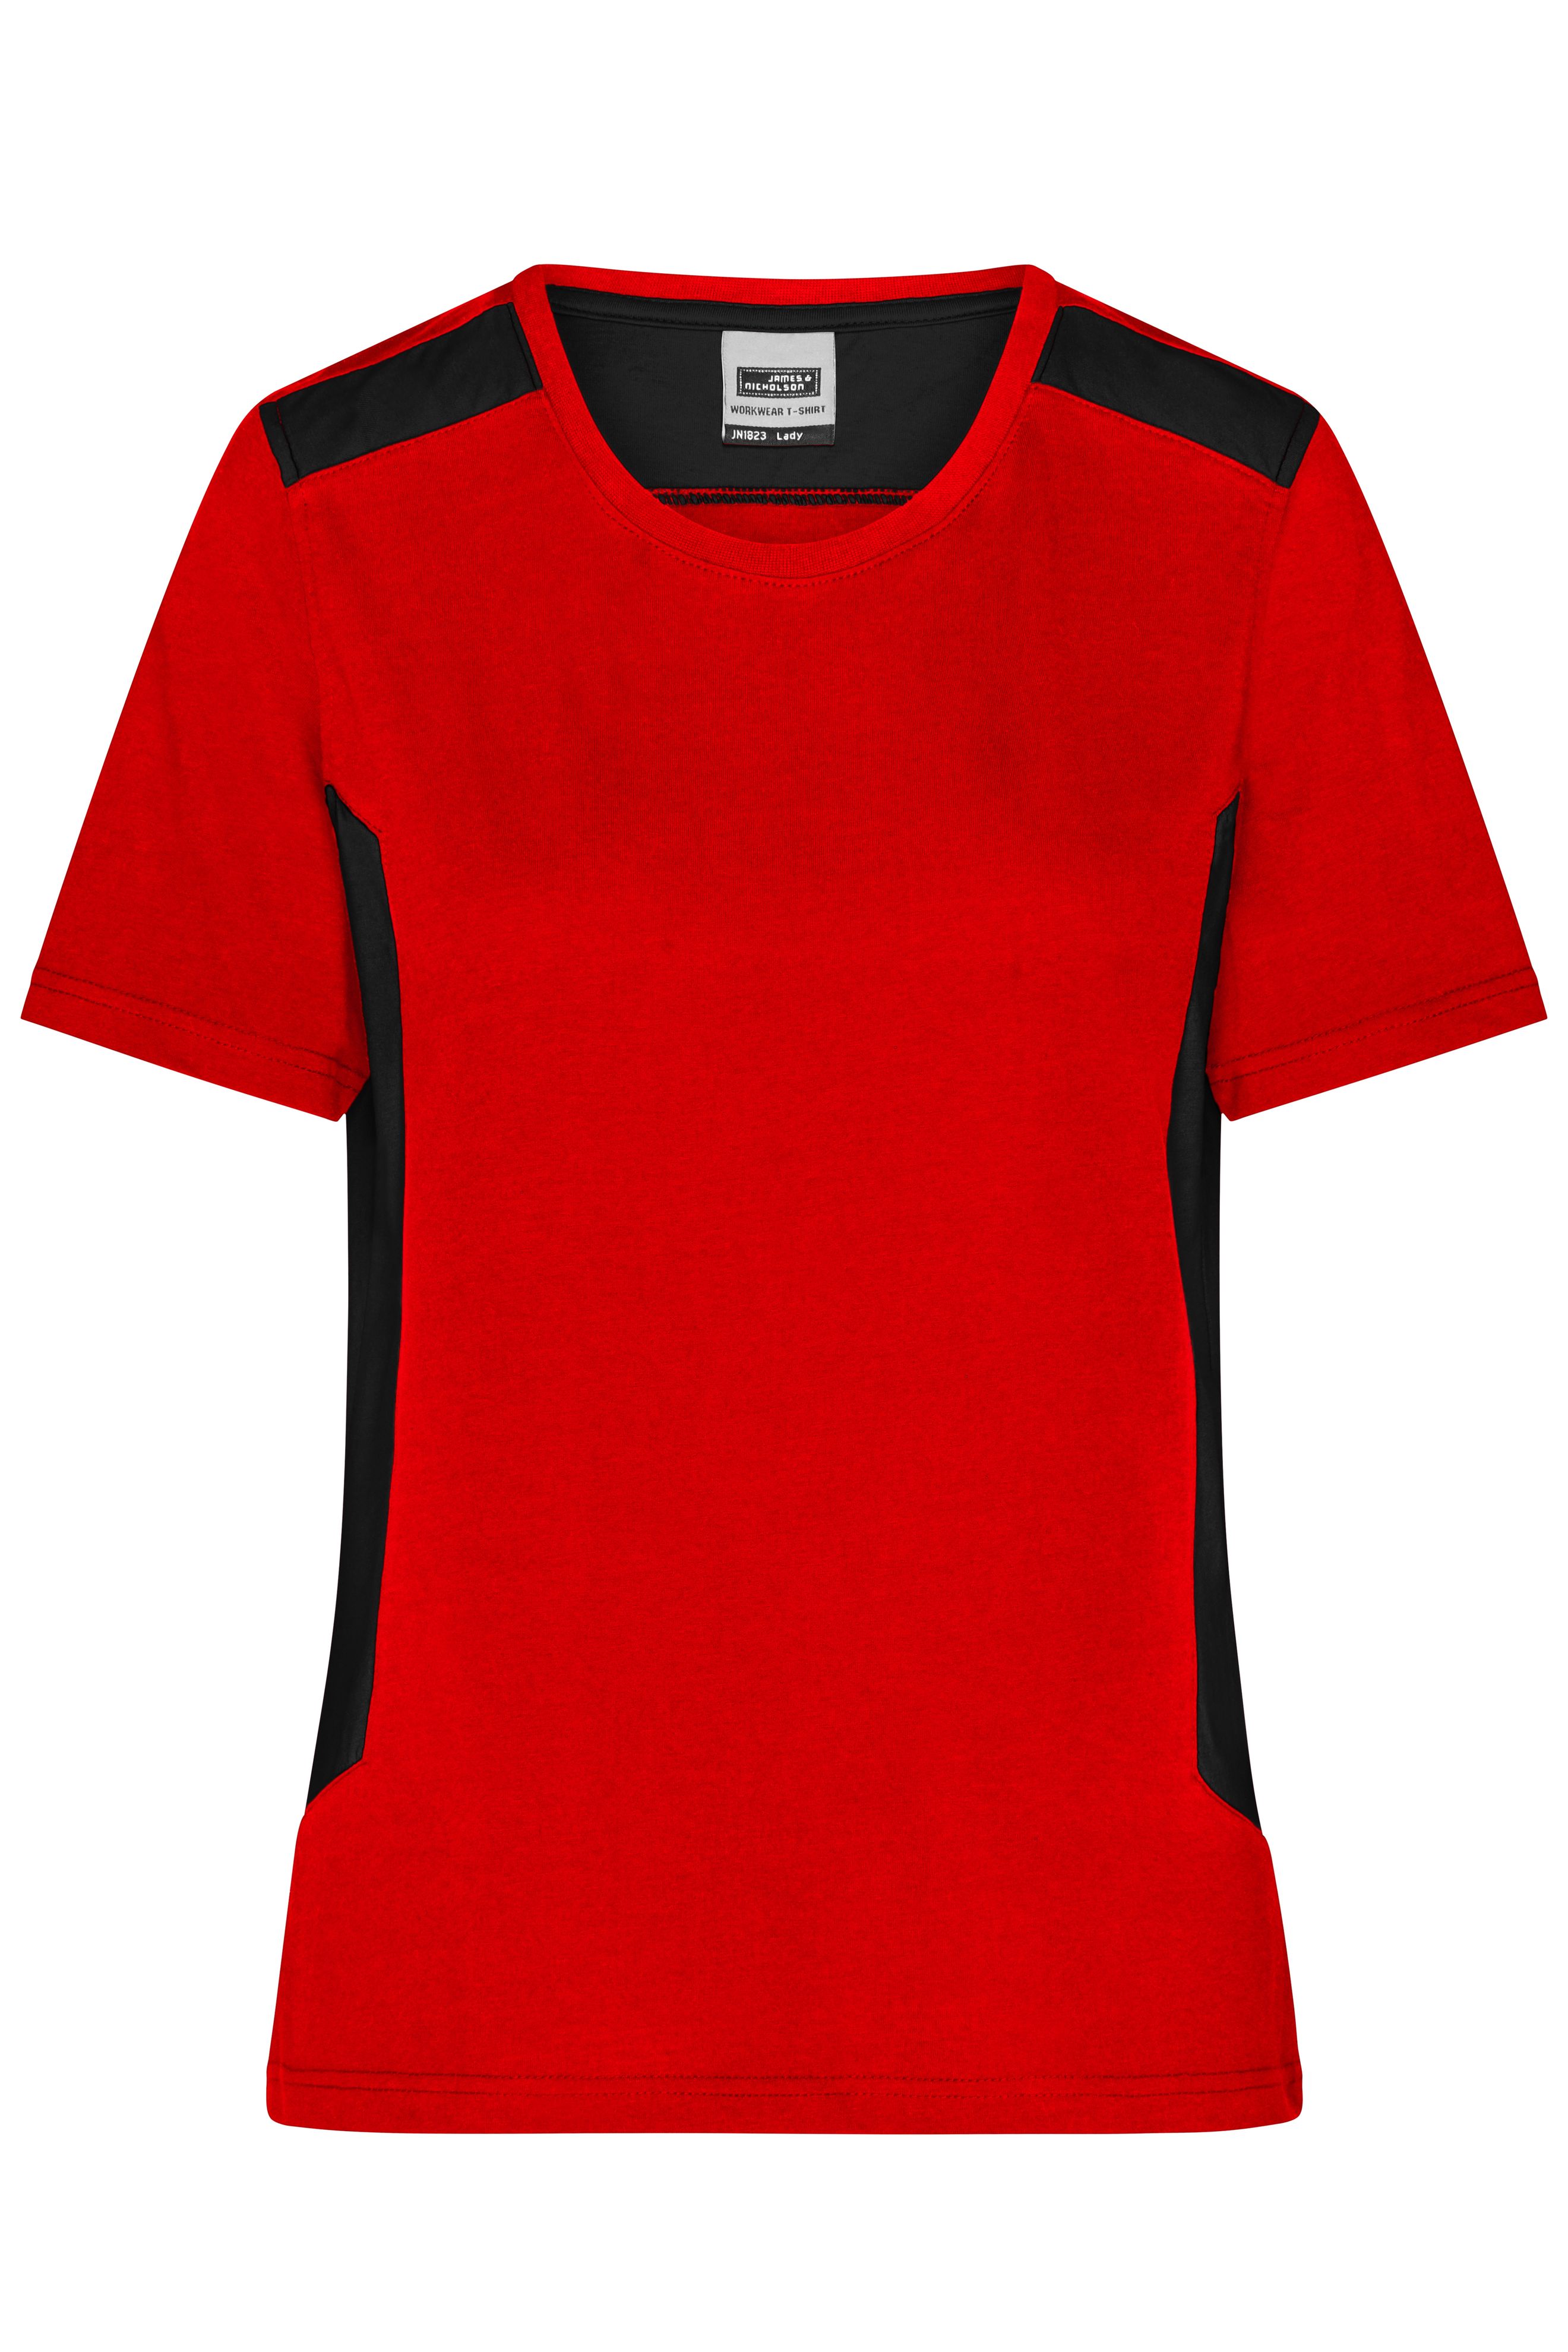 Ladies' Workwear T-Shirt - STRONG - JN1823 Strapazierfähiges und pflegeleichtes T-Shirt mit Kontrasteinsätzen